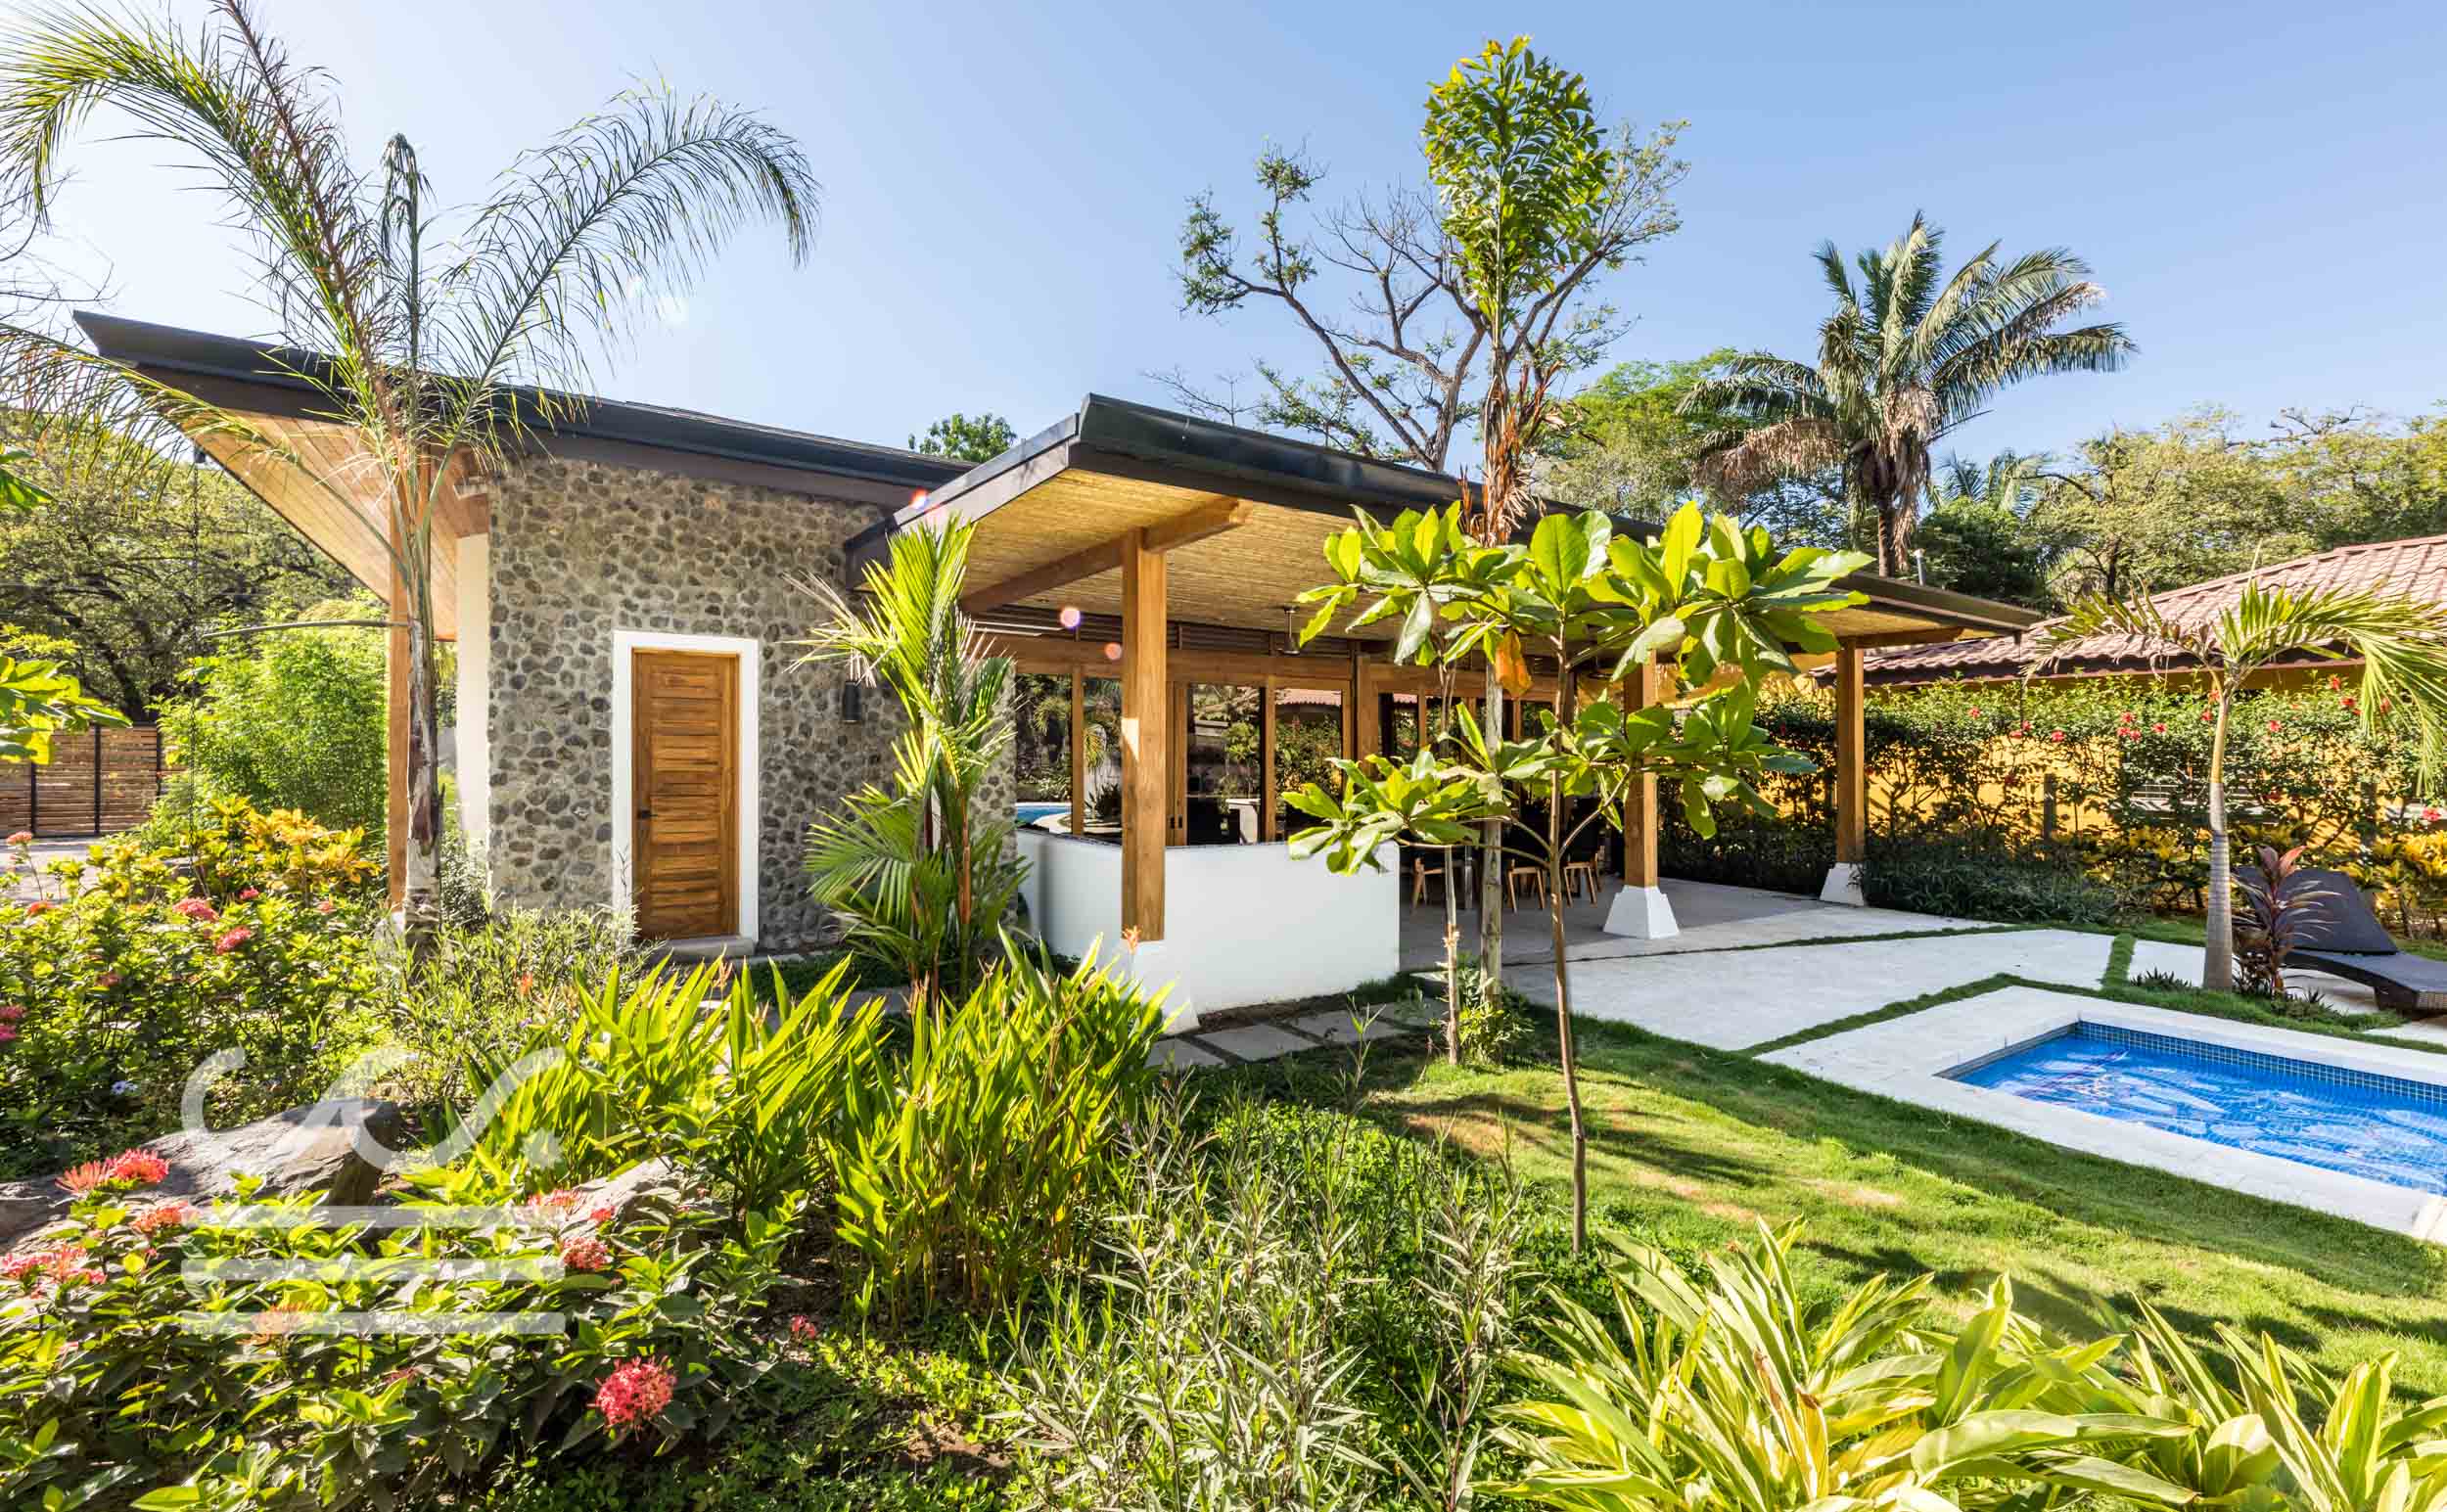 Villa-Lola-Wanderlust-Realty-Real-Estate-Nosara-Costa-Rica-10.jpg